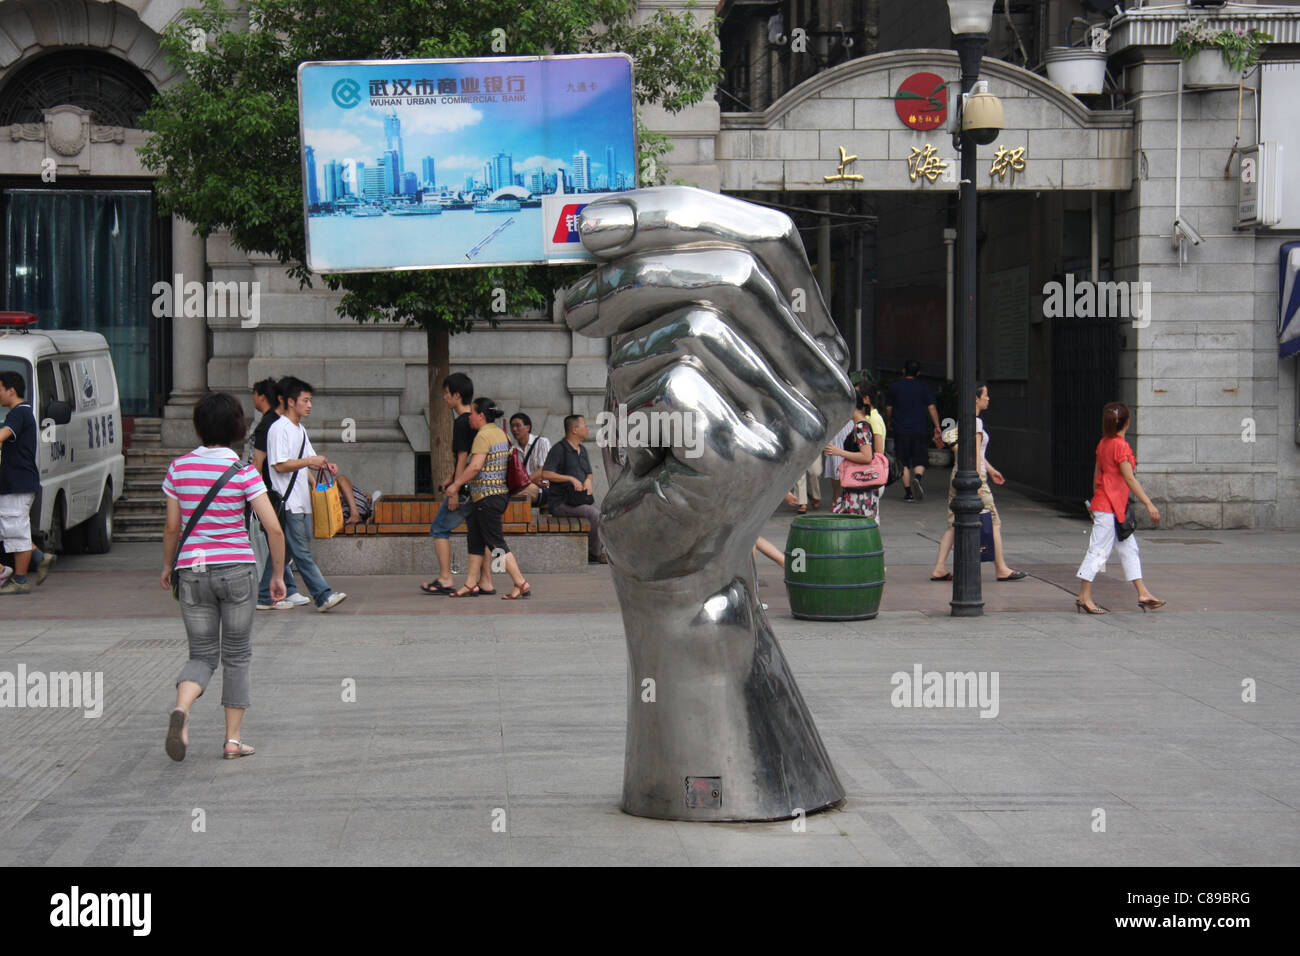 Bank credit card sculpture at Wuhan, China Stock Photo